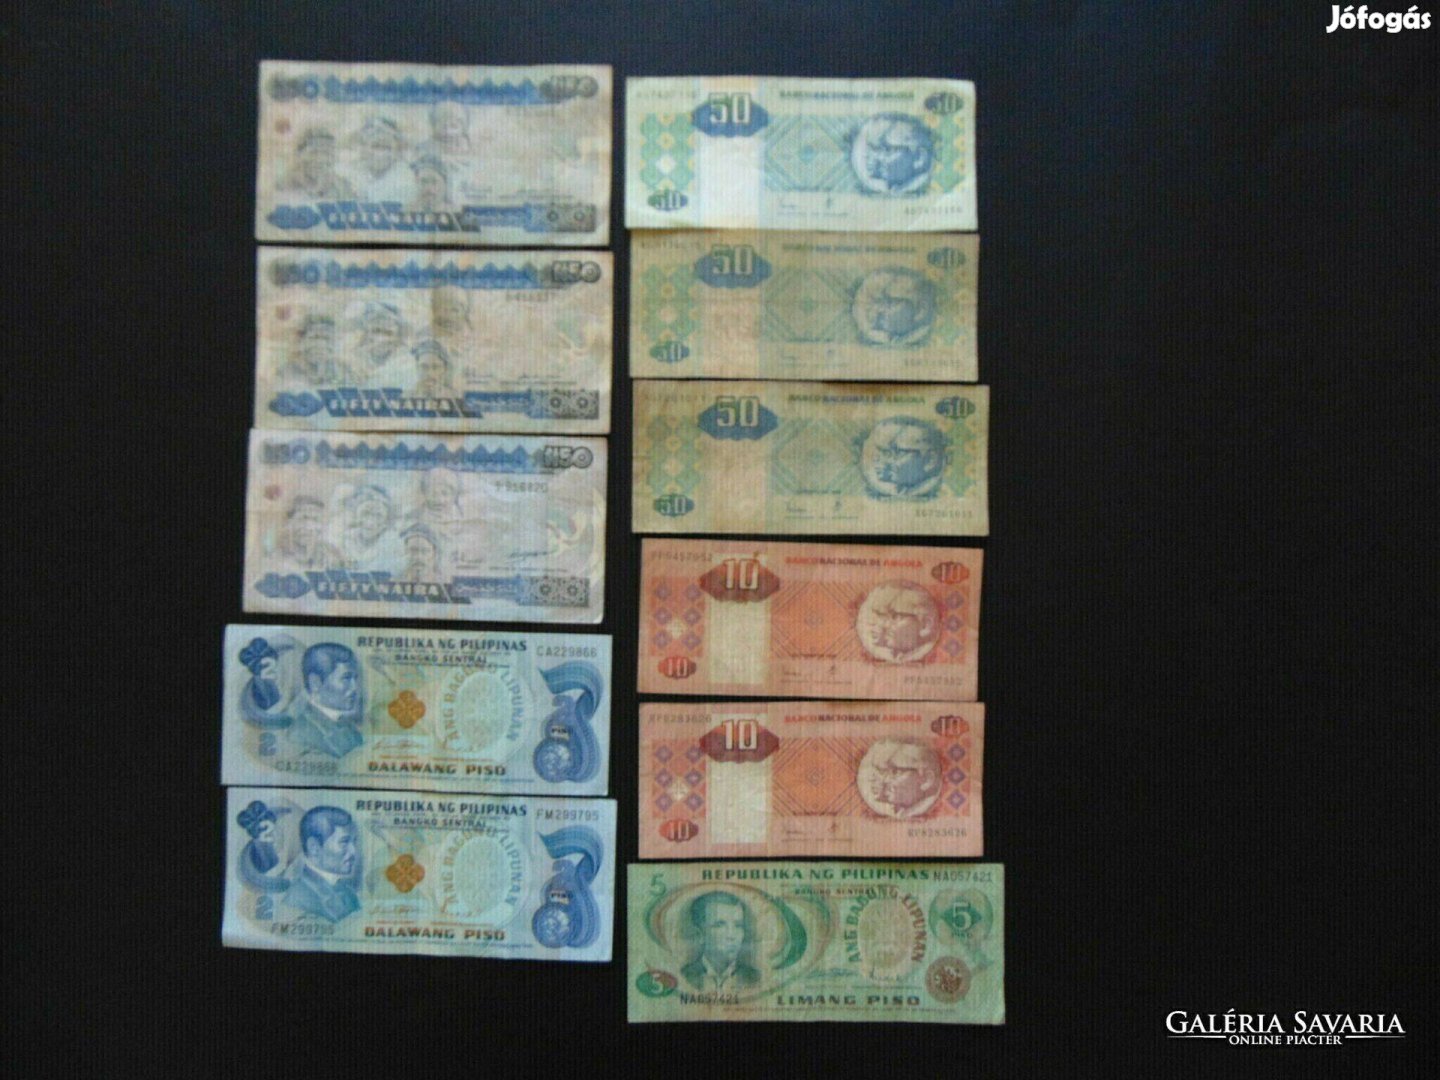 11 darab külföldi bankjegy vegyes csomag